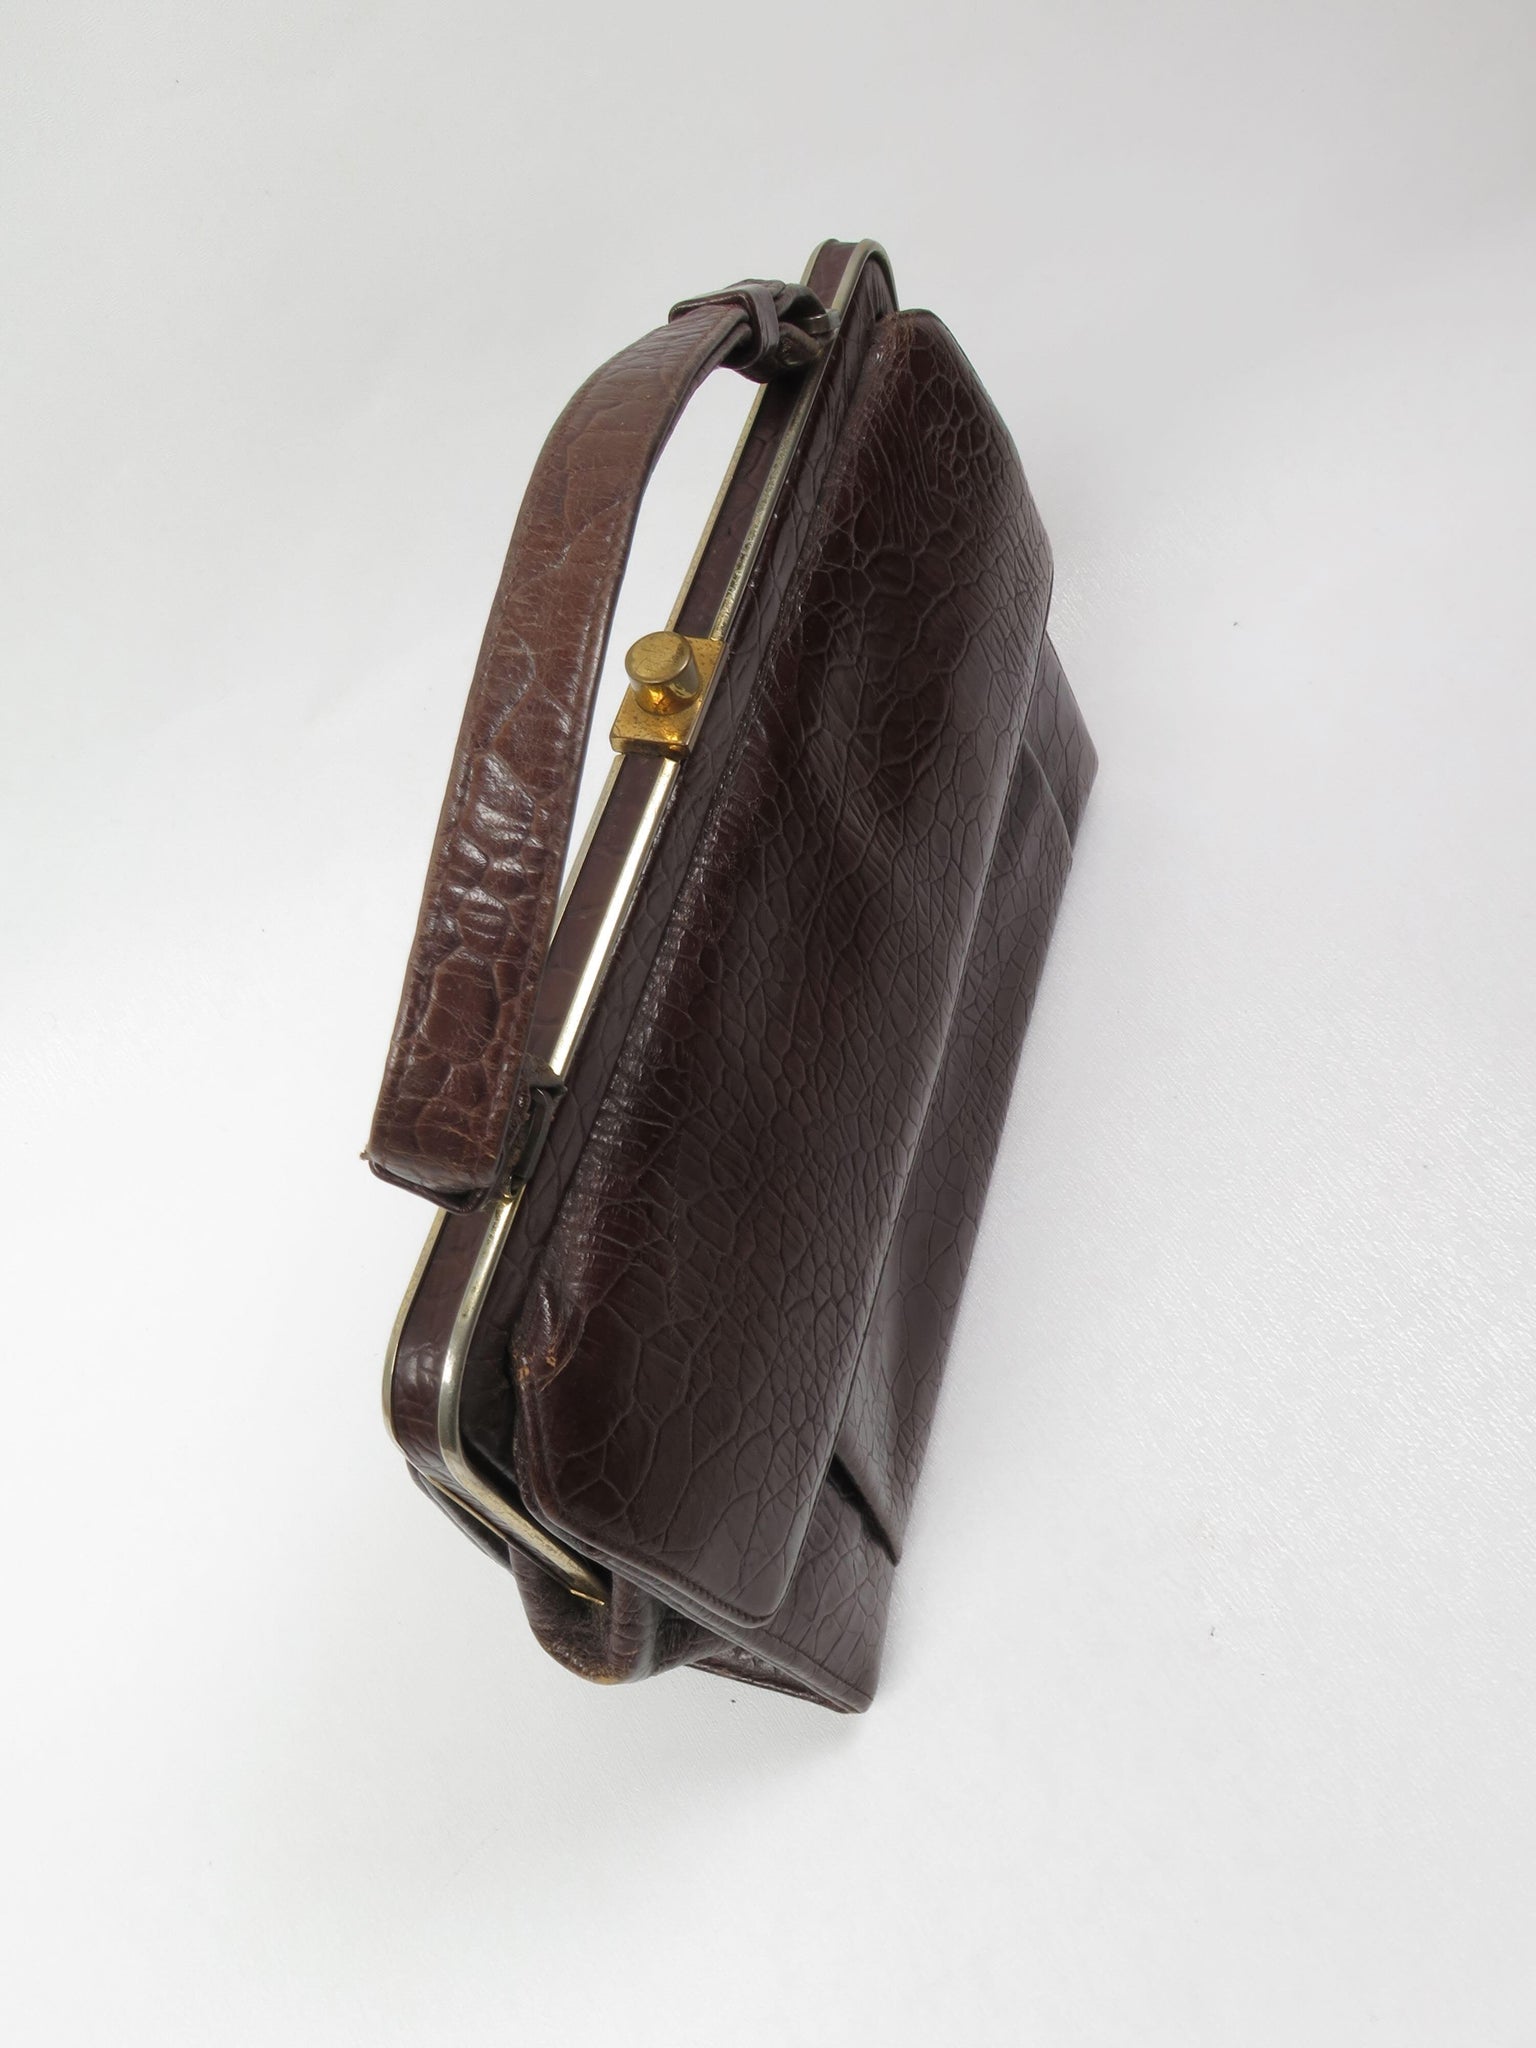 Vintage Brown Handbag 1950s - The Harlequin